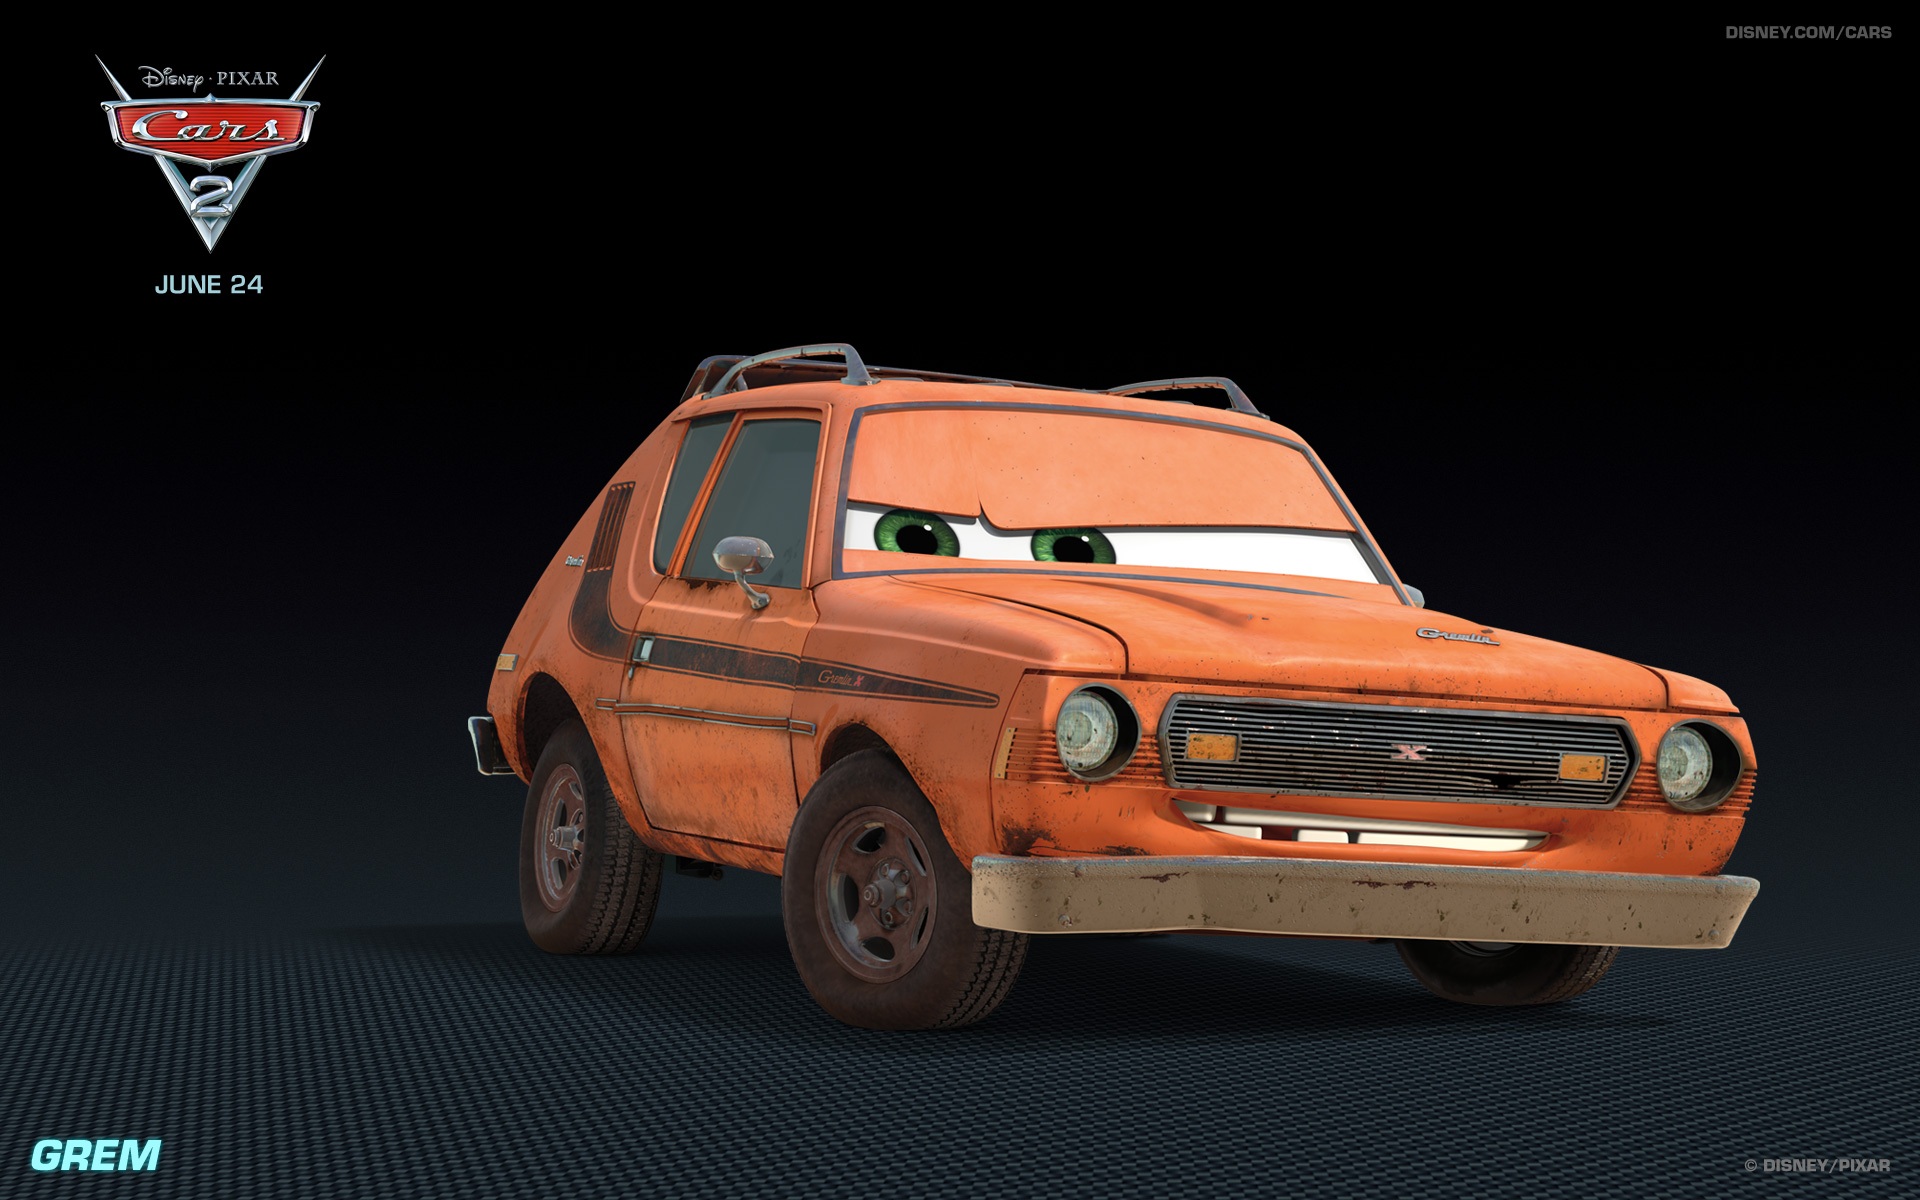 Download mobile wallpaper Cars 2, Cars, Pixar, Disney, Car, Movie for free.